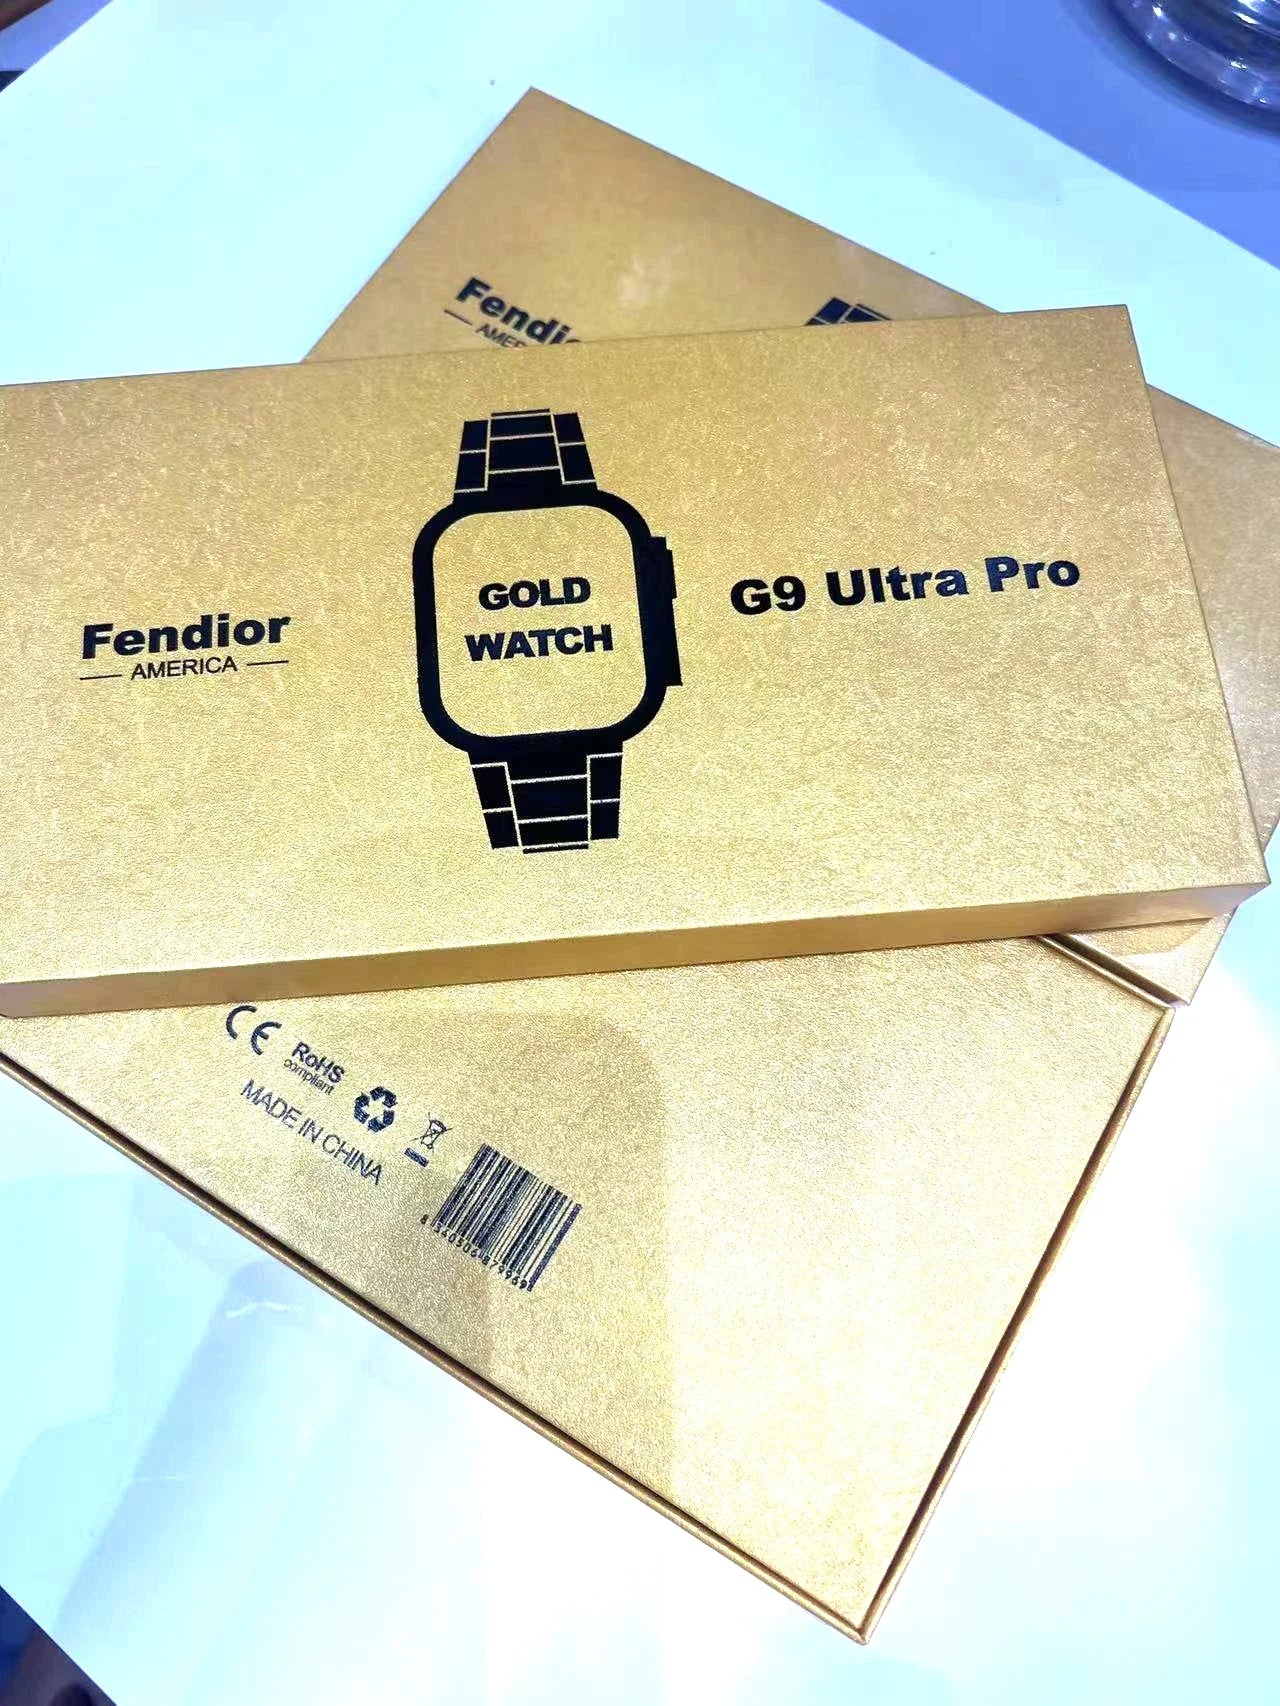 Ultrapro smart watches